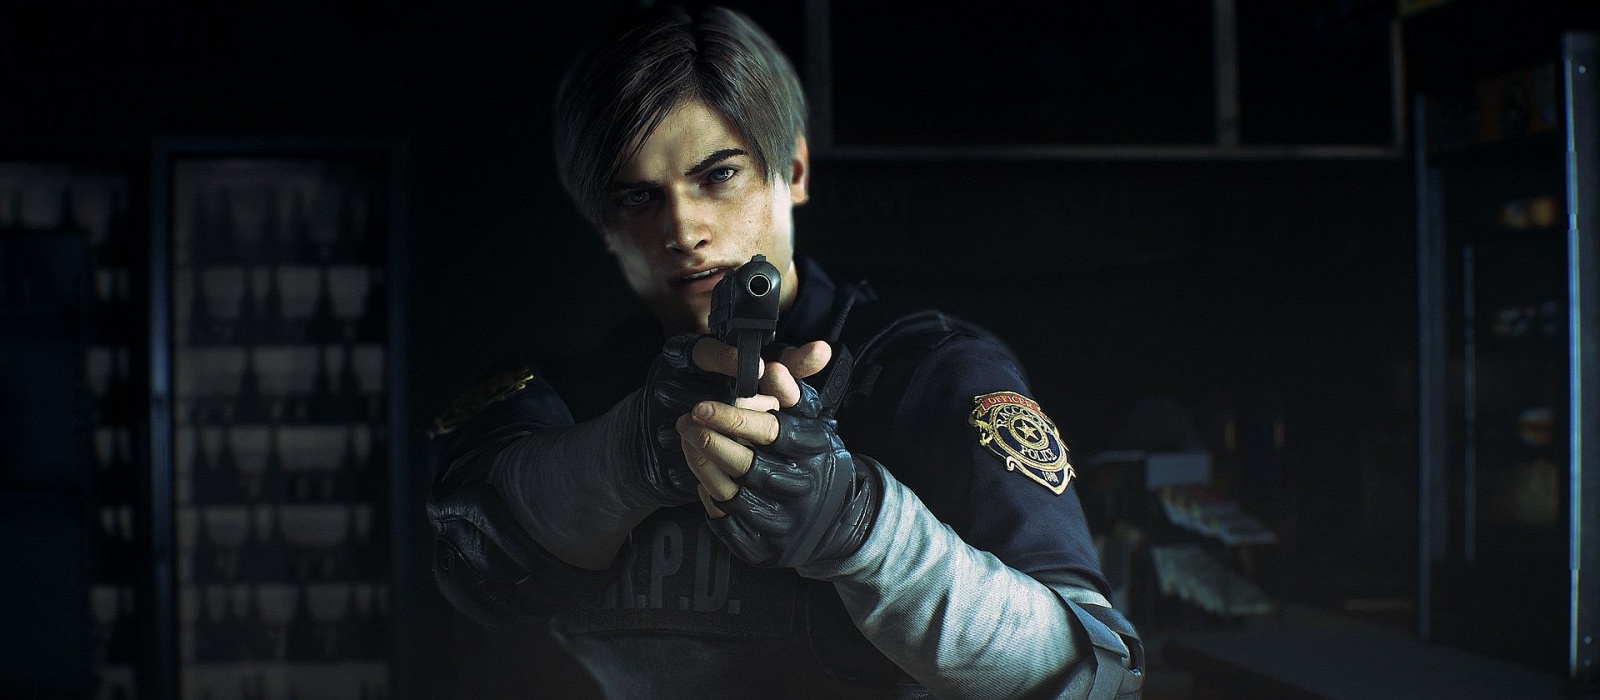 Появился тизер Resident Evil: Infinite Darkness. Похоже, проект будет не о сёстрах Вескер